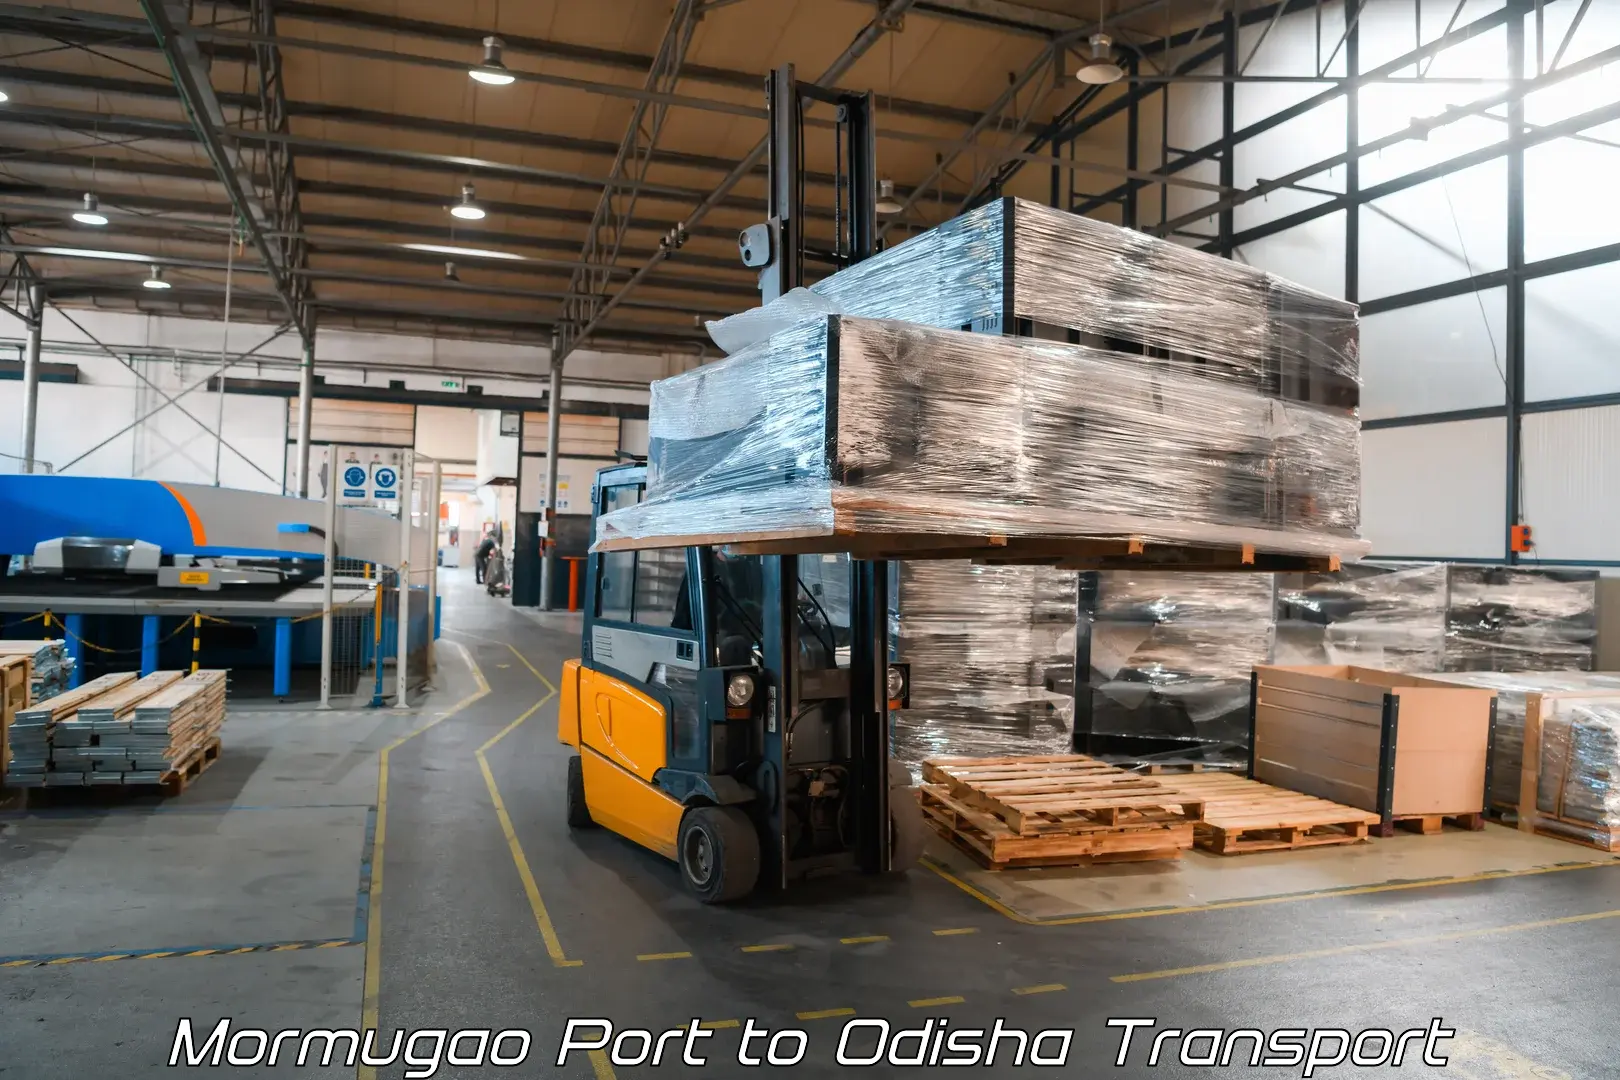 Goods delivery service Mormugao Port to Paradip Port